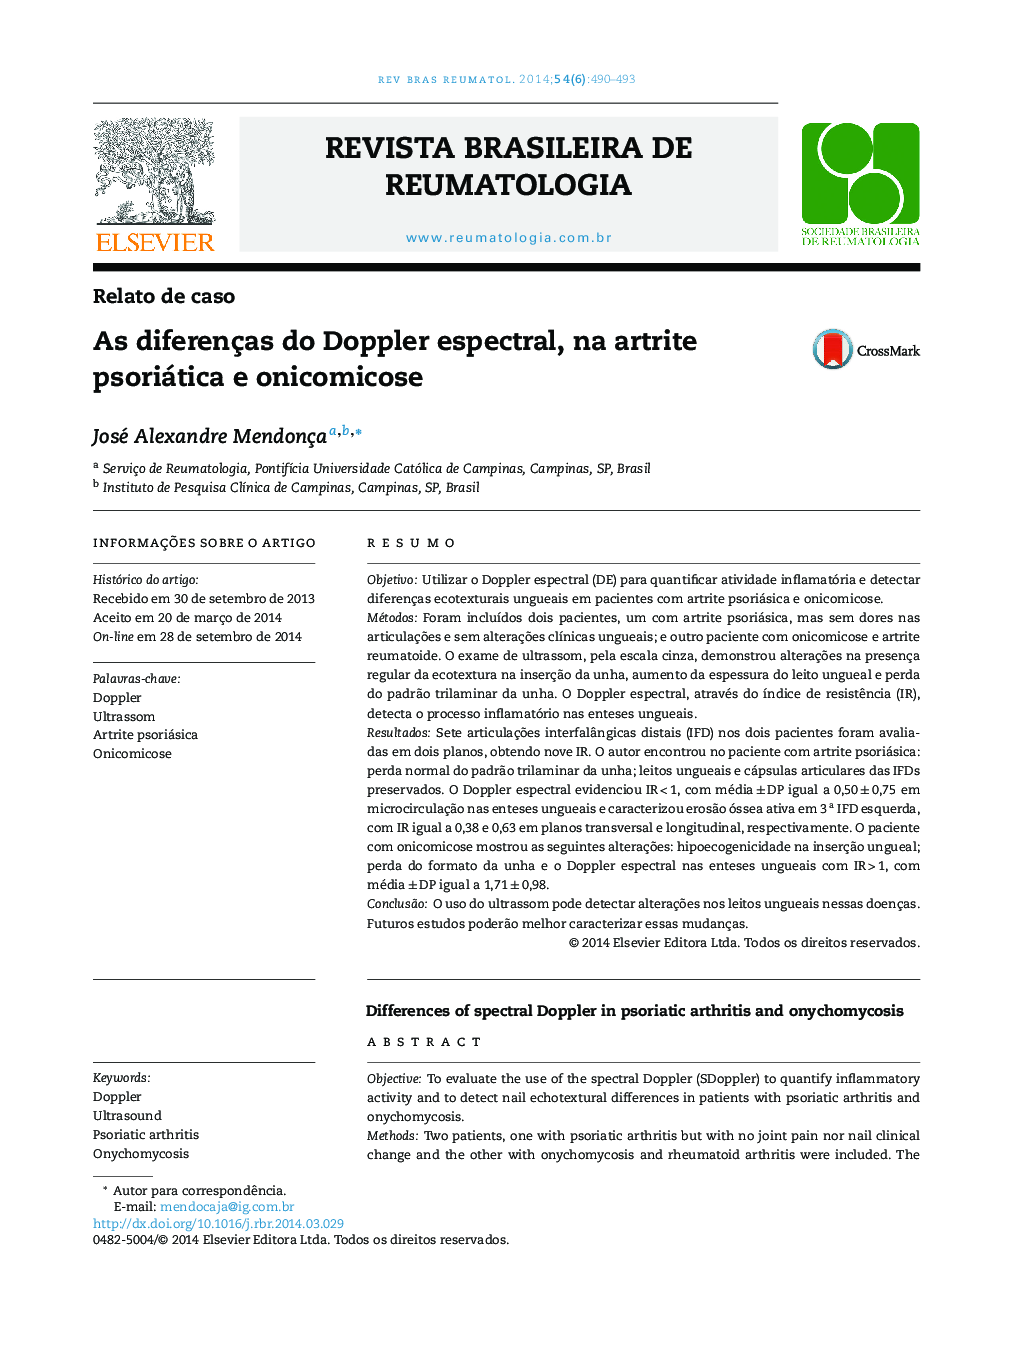 As diferenças do Doppler espectral, na artrite psoriática e onicomicose